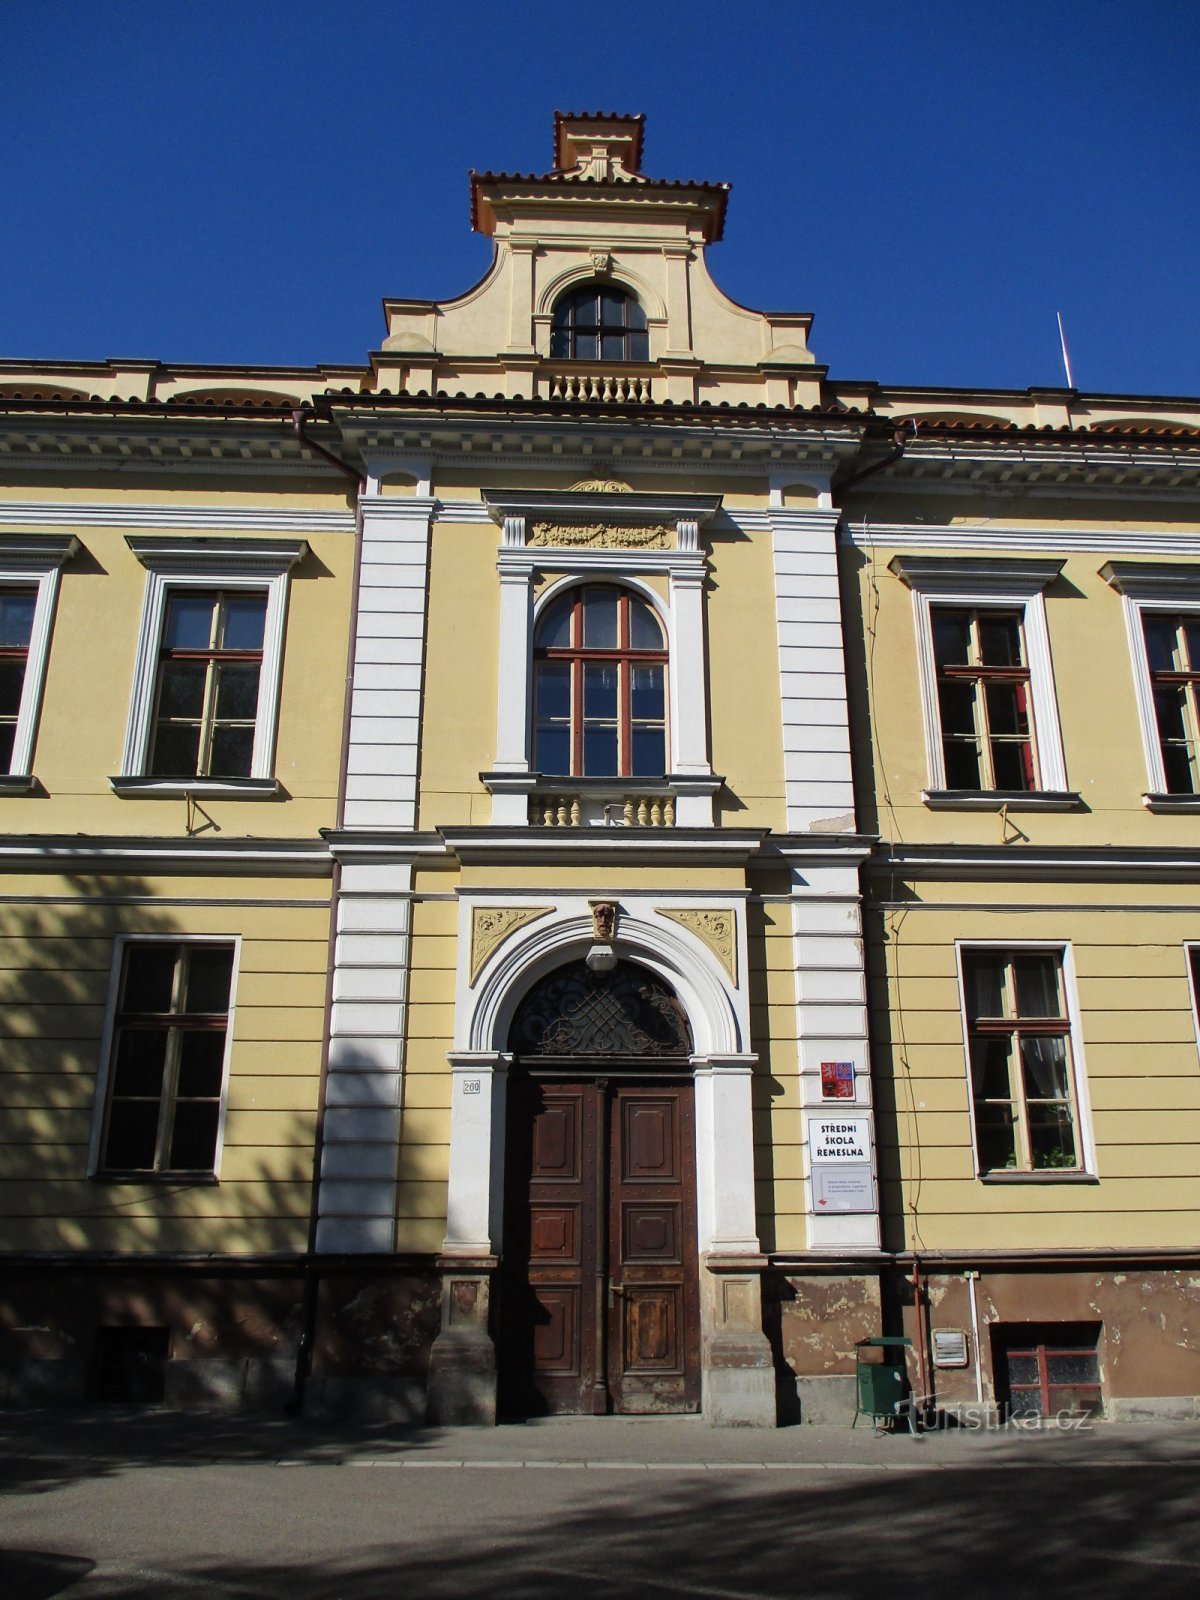 Școala secundară profesională Jaroměř (22.4.2020 aprilie XNUMX)